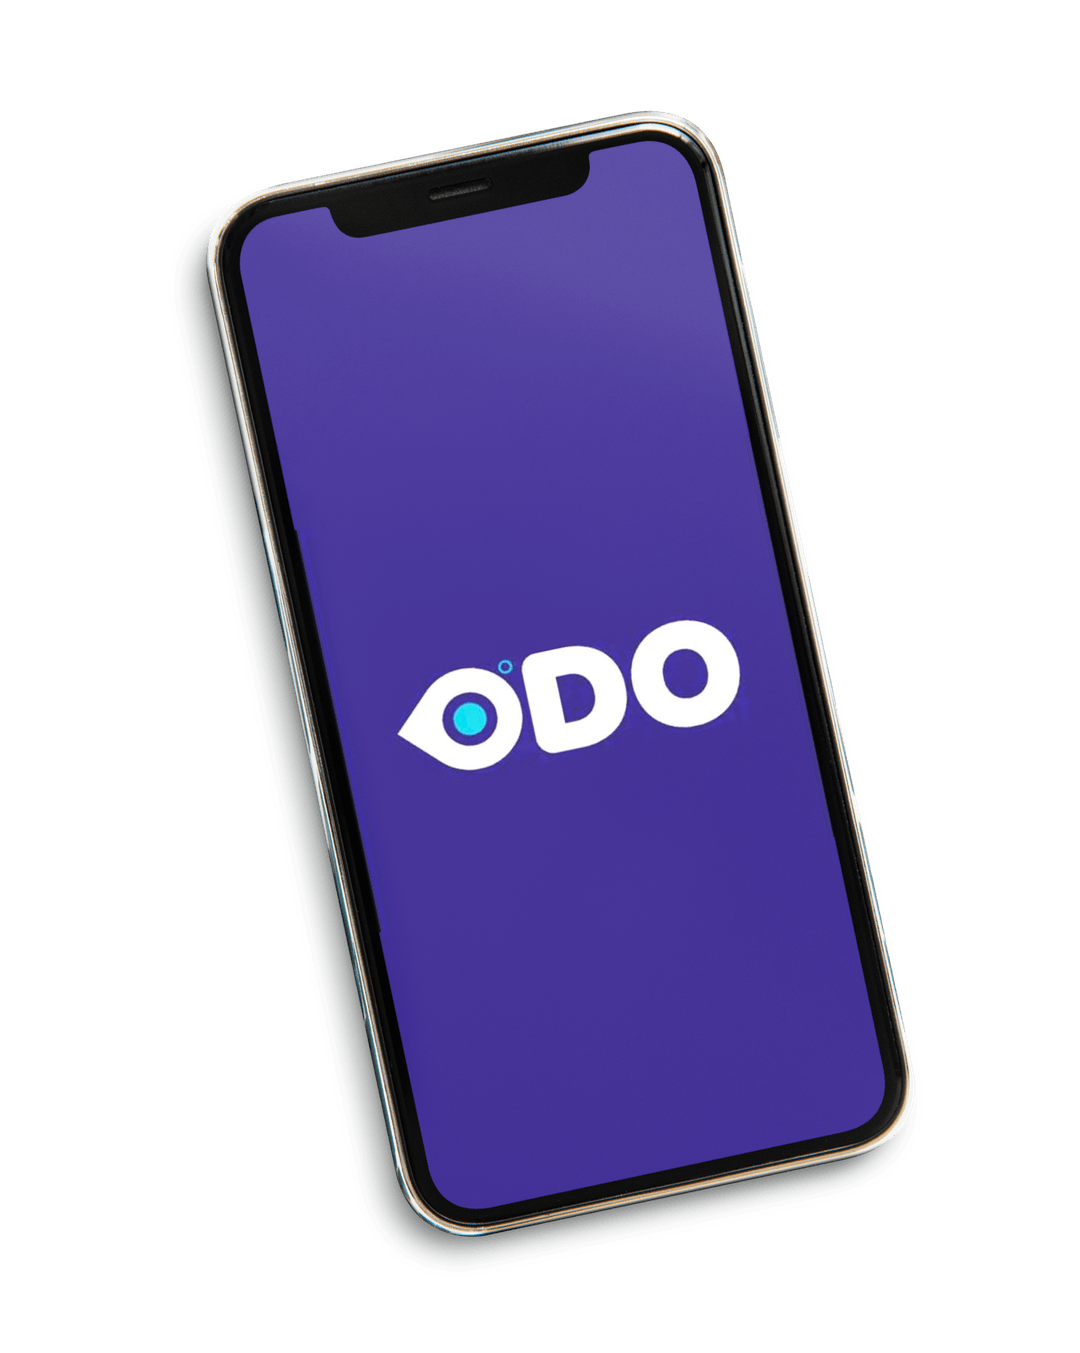 ODO - App